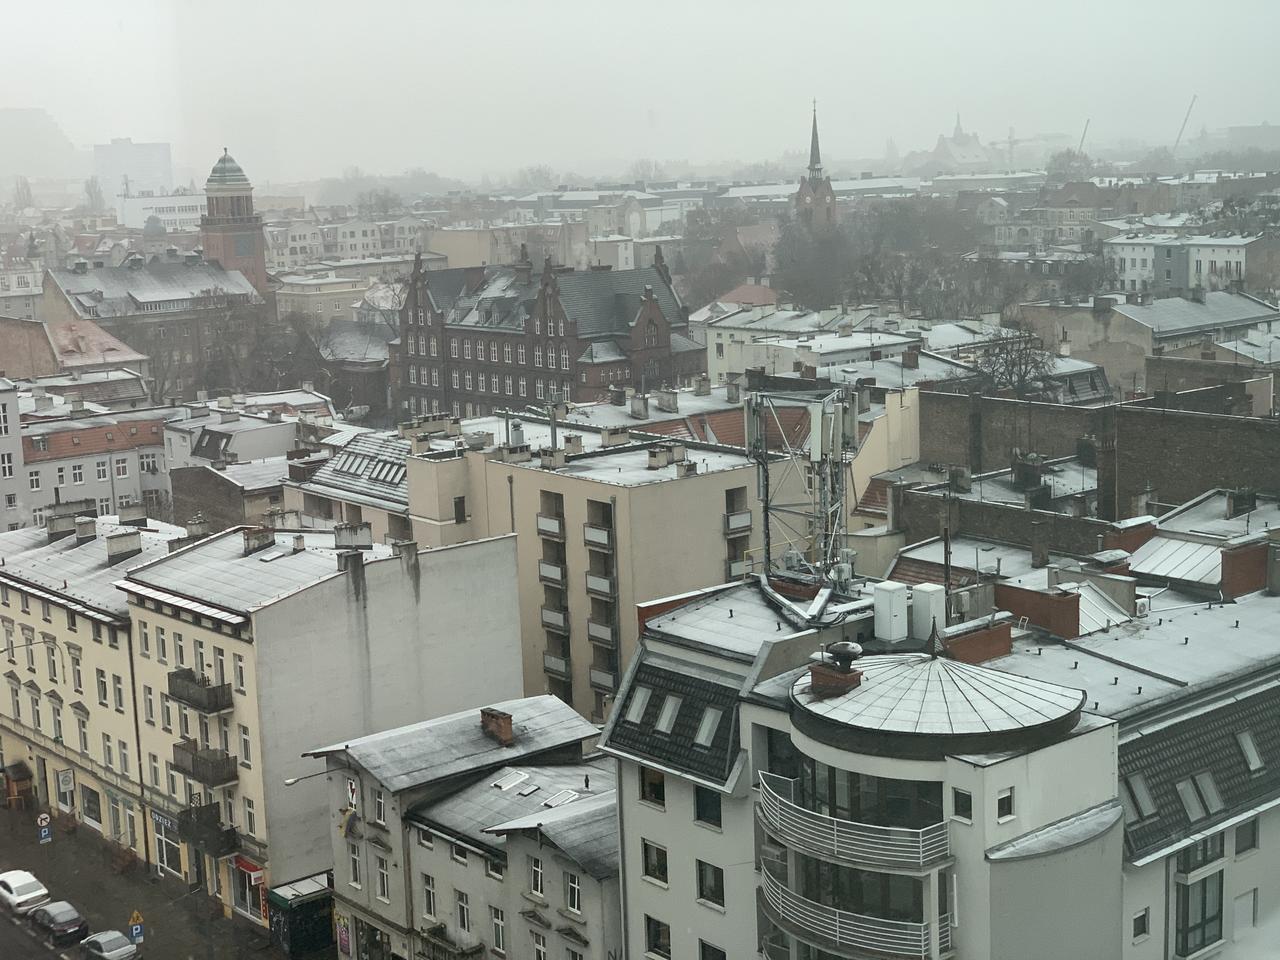 Uważajmy na drogach! Od południa w Poznaniu ma padać śnieg! 